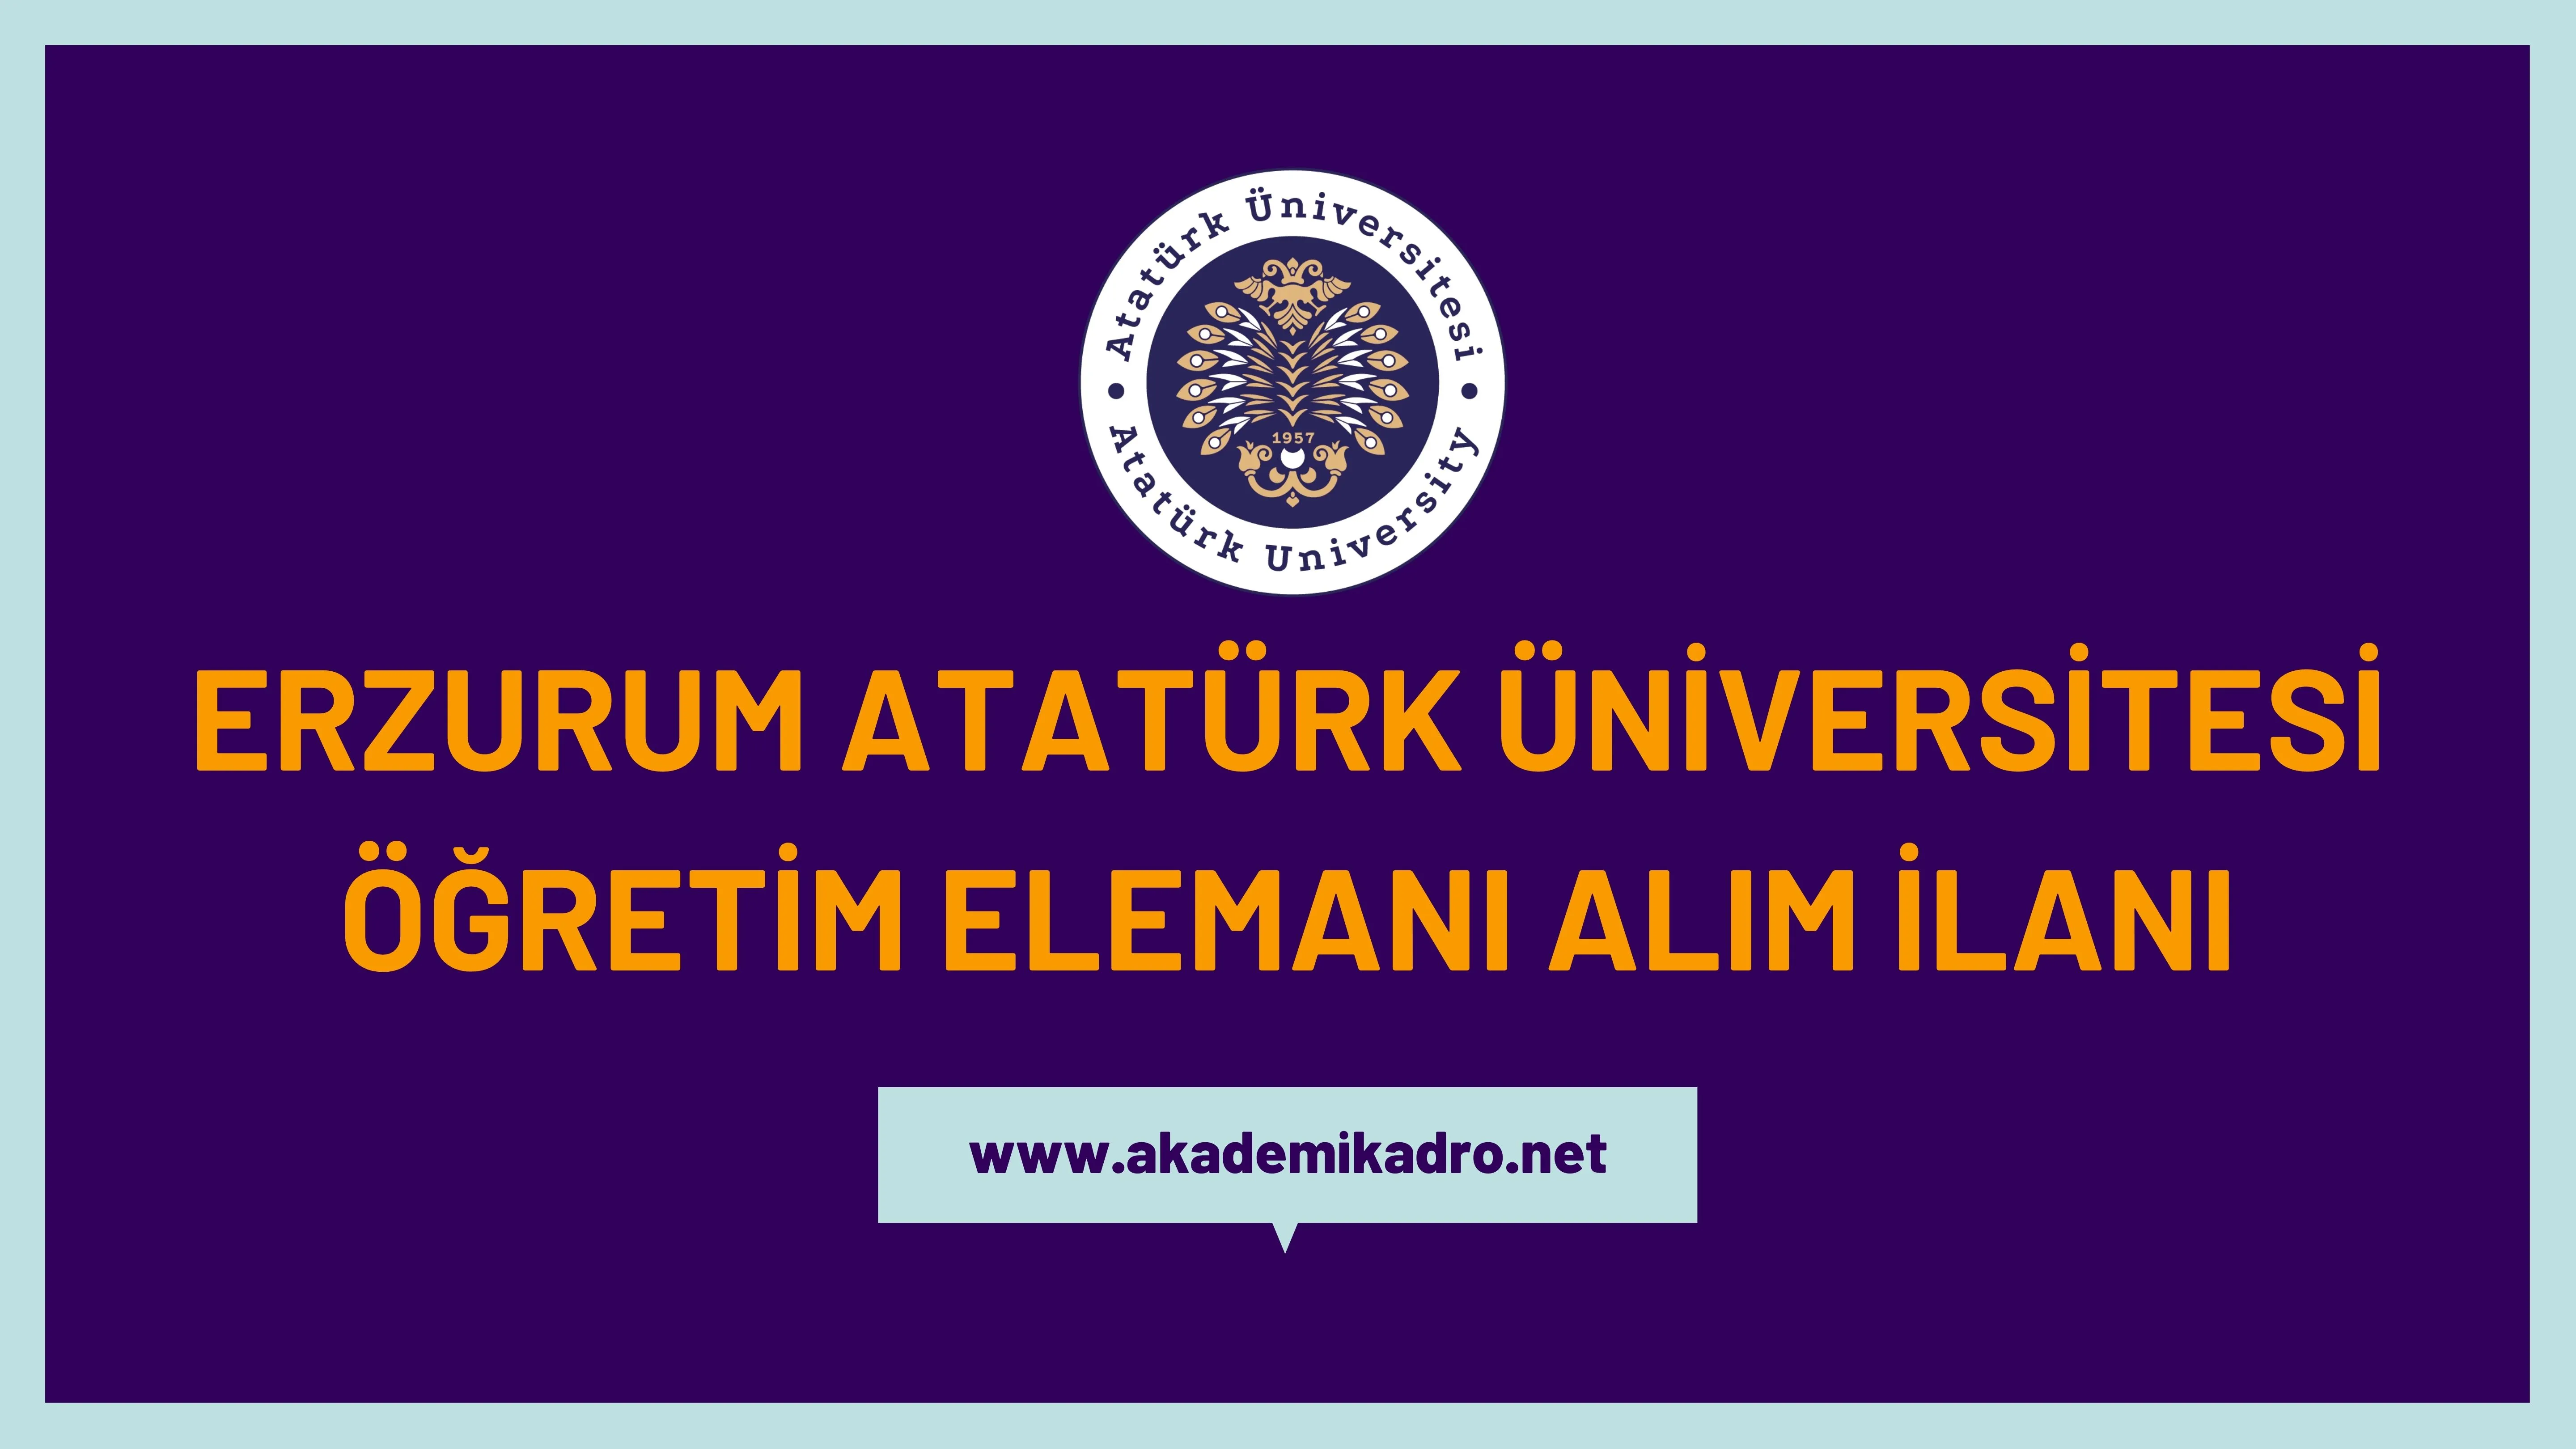 Atatürk Üniversitesi 14 Araştırma görevlisi, 6 öğretim görevlisi ve 73 öğretim üyesi alacak.